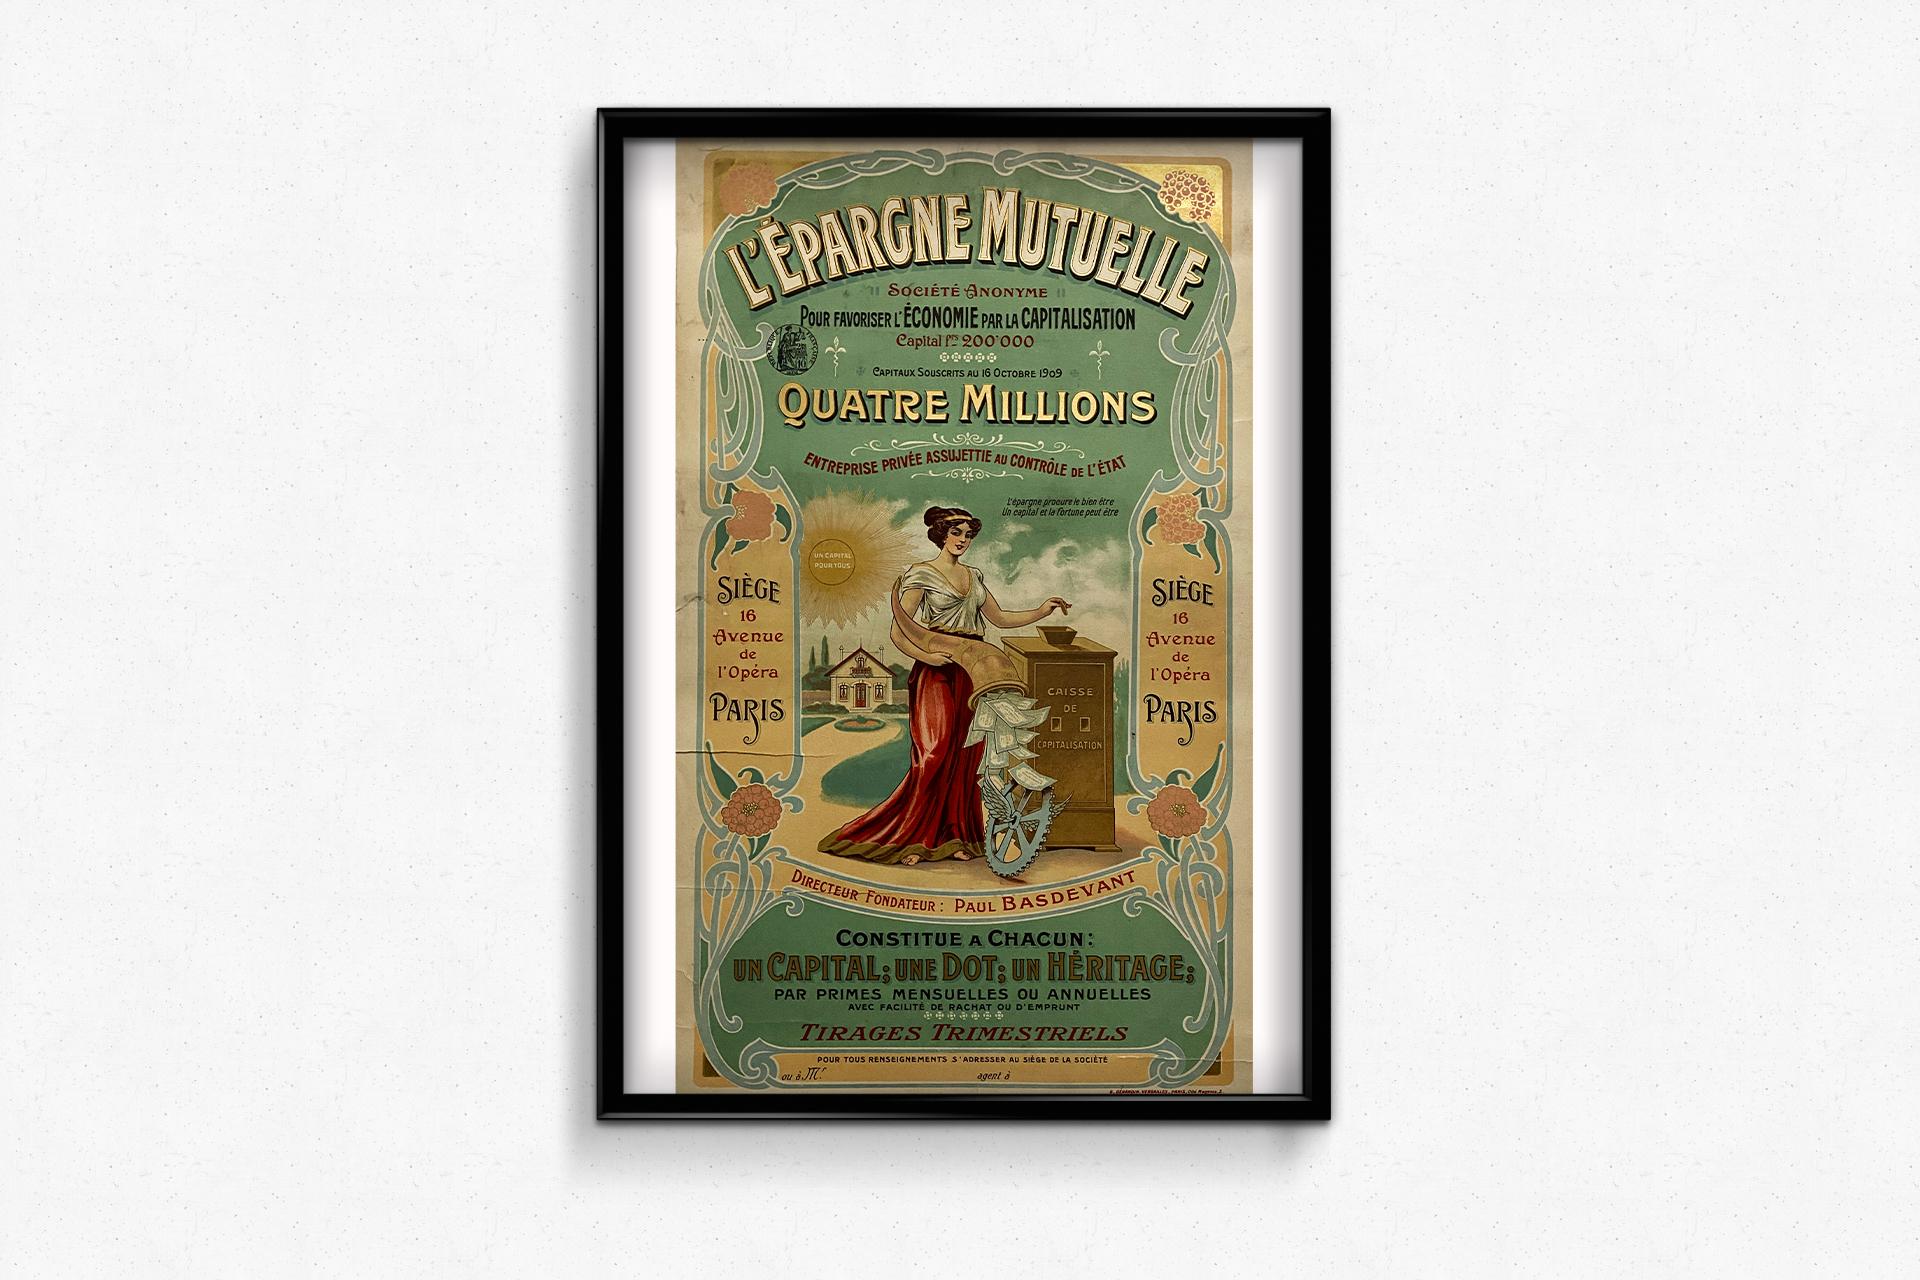 Originalplakat aus der Zeit um 1910 zur Förderung des gegenseitigen Sparens.

Damals war es wichtig, 